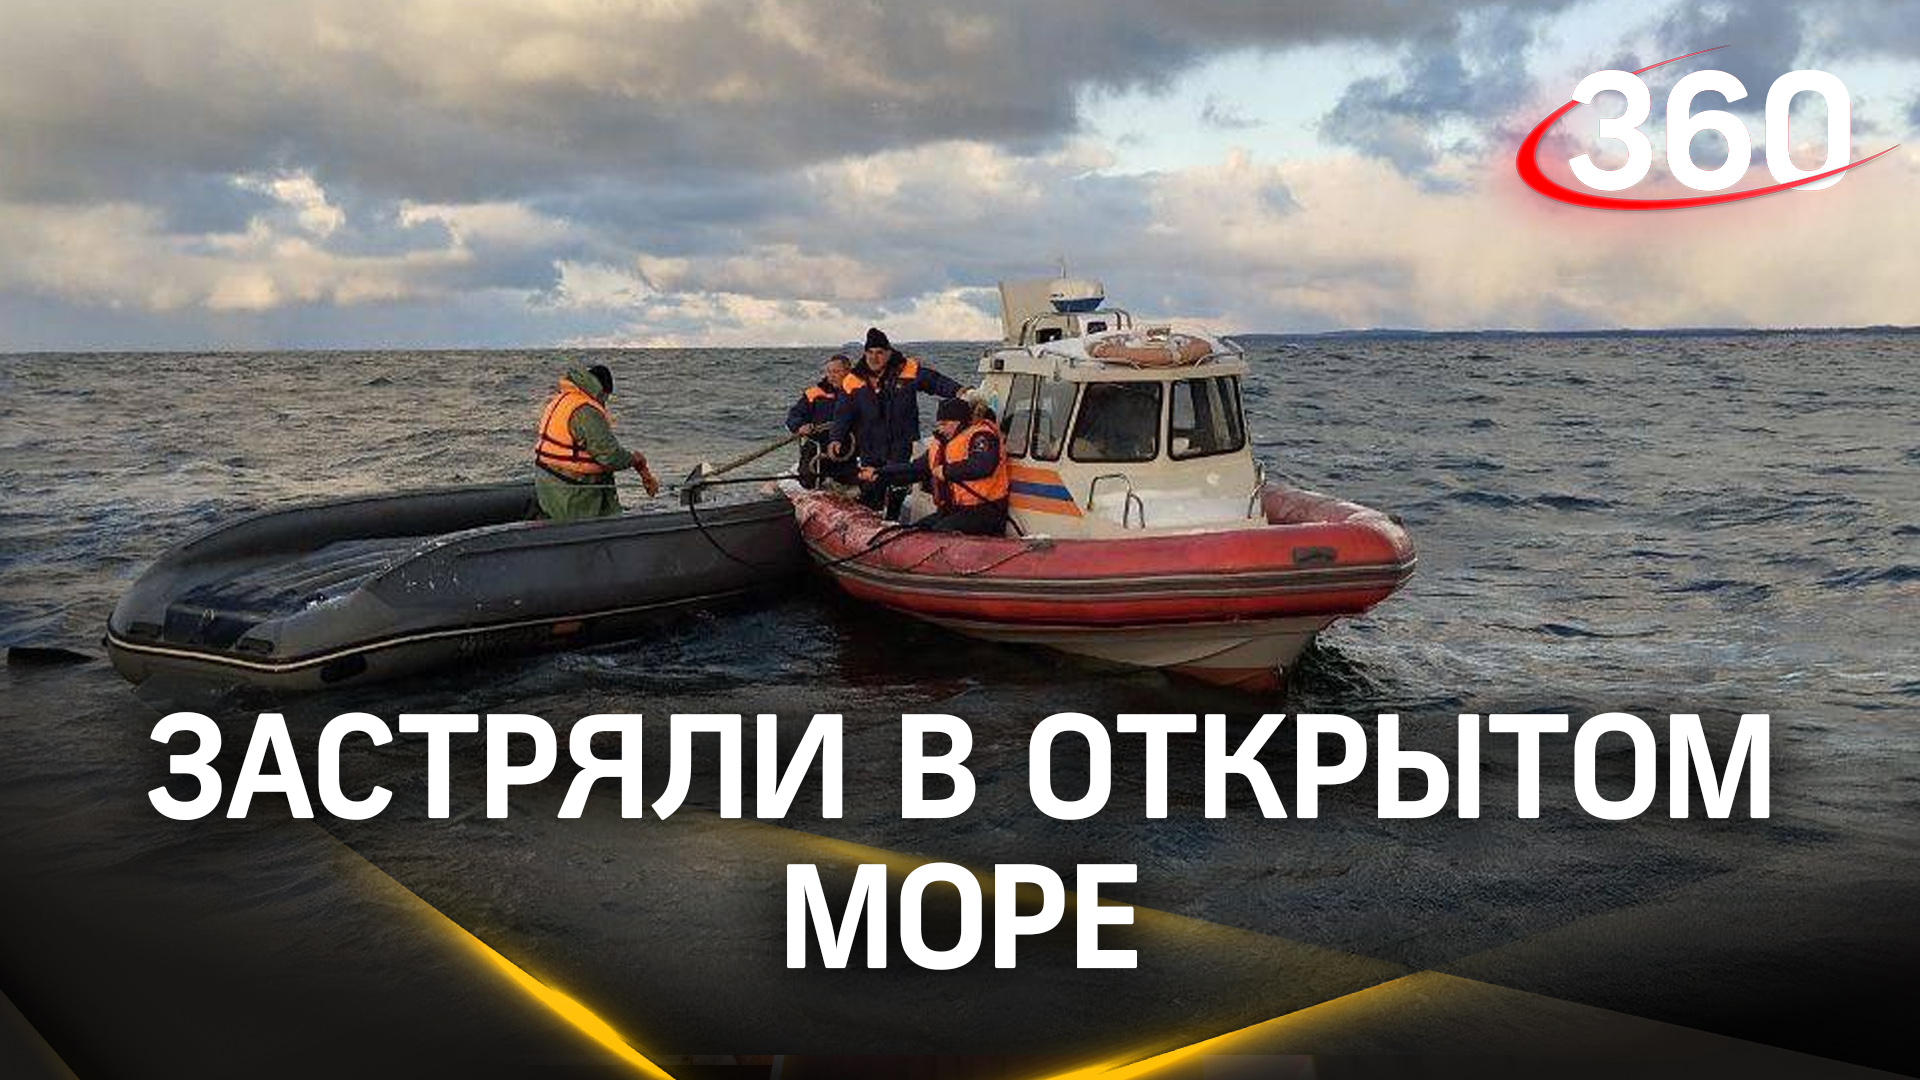 Кадры операции спасения рыбаков в открытом море в Балтийске. Их лодка перевернулась